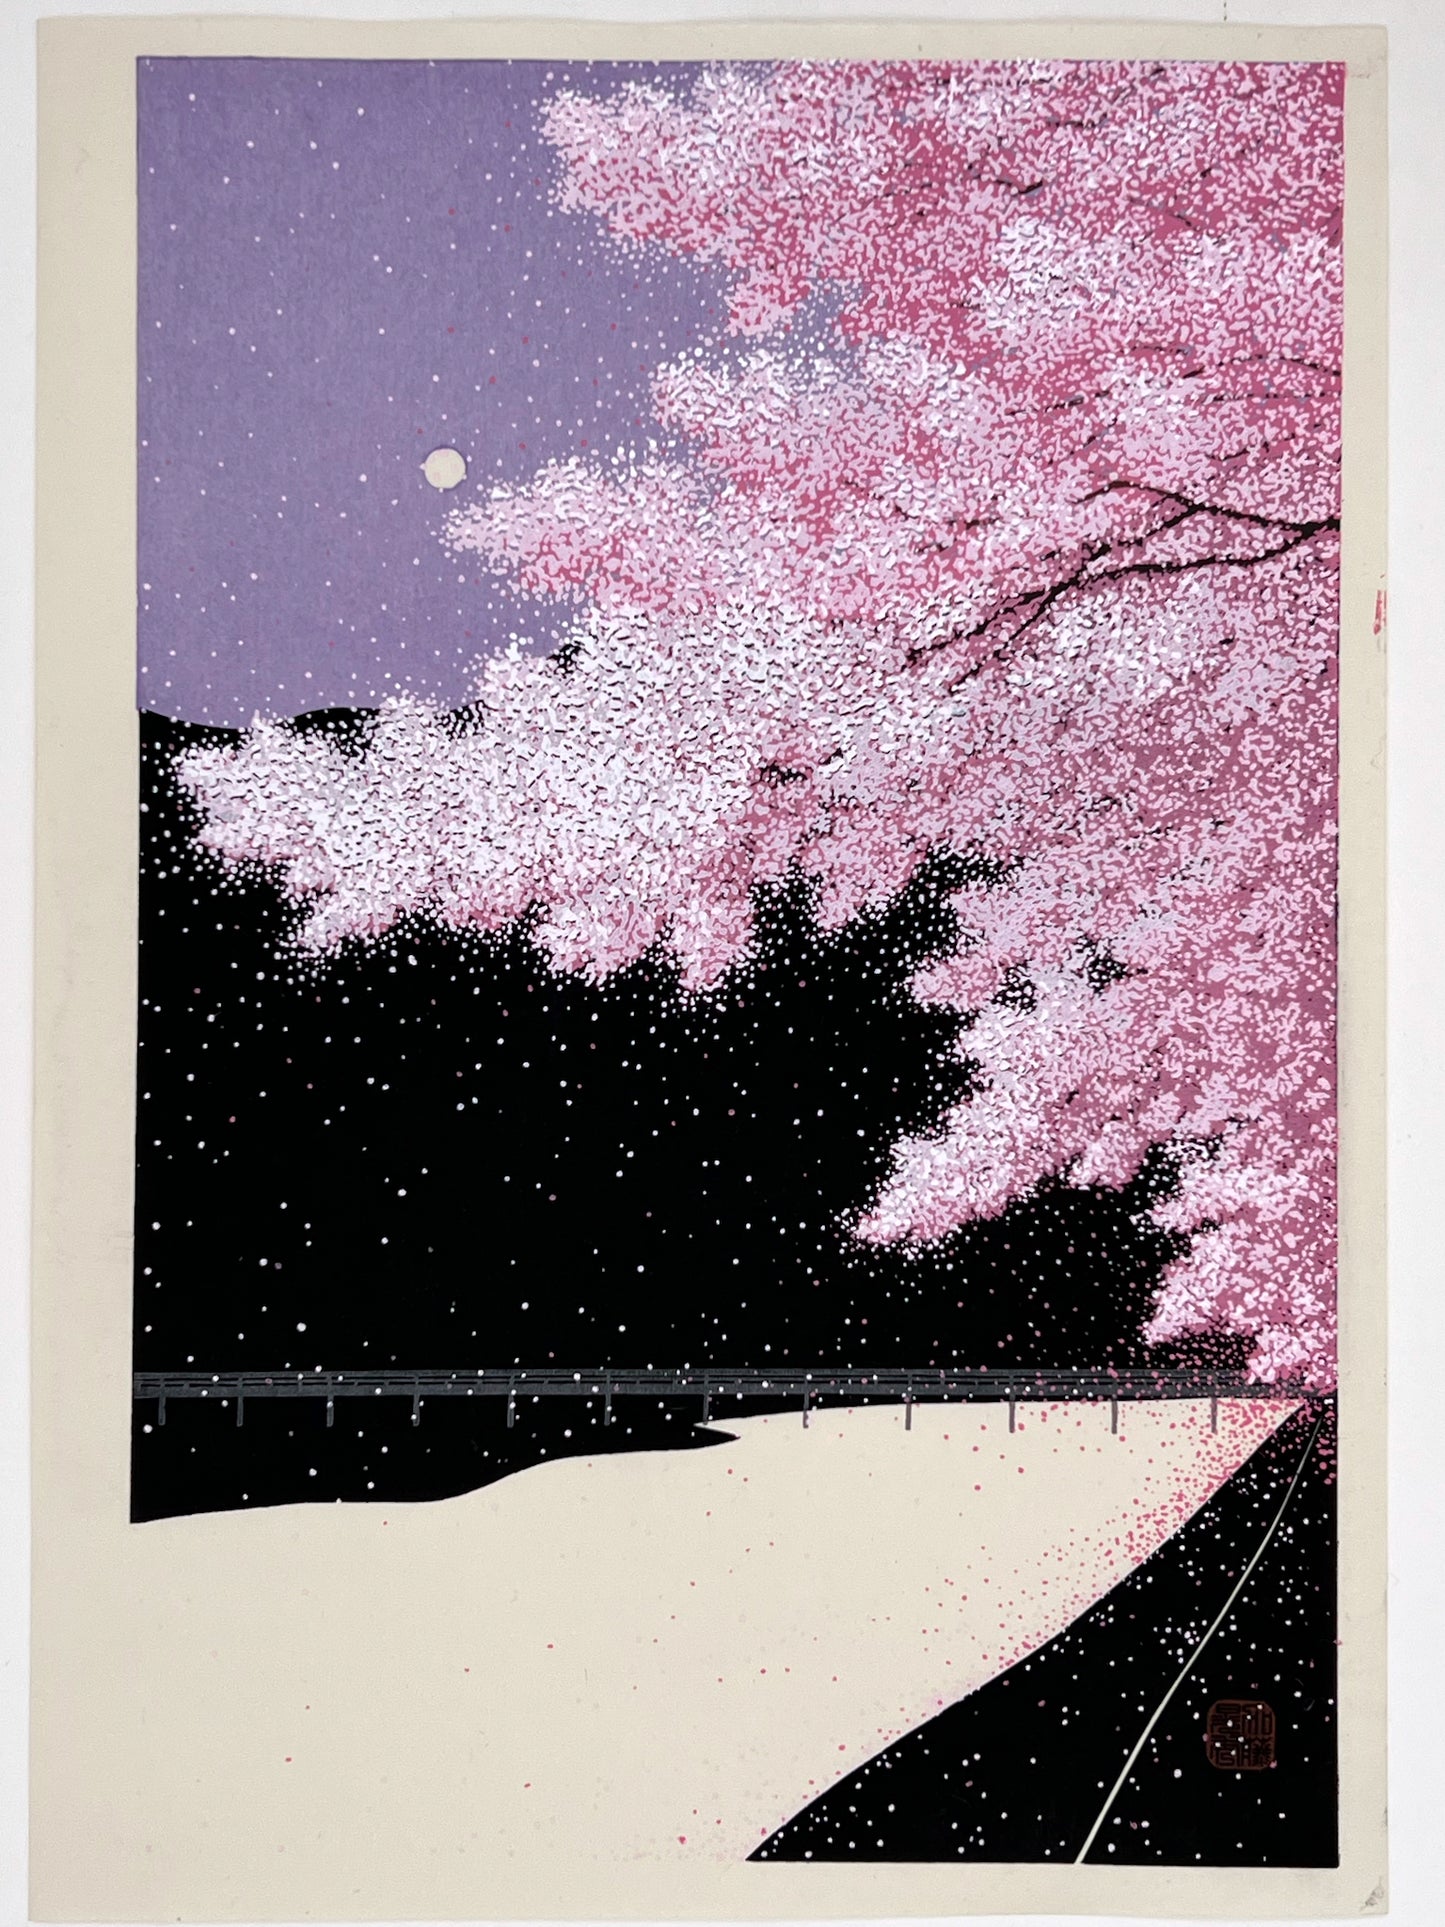 estampe japonaise contemporaine de teruhide kato nuit de pleine lune de printemps et cerisiers en fleurs et lune sur ciel violet